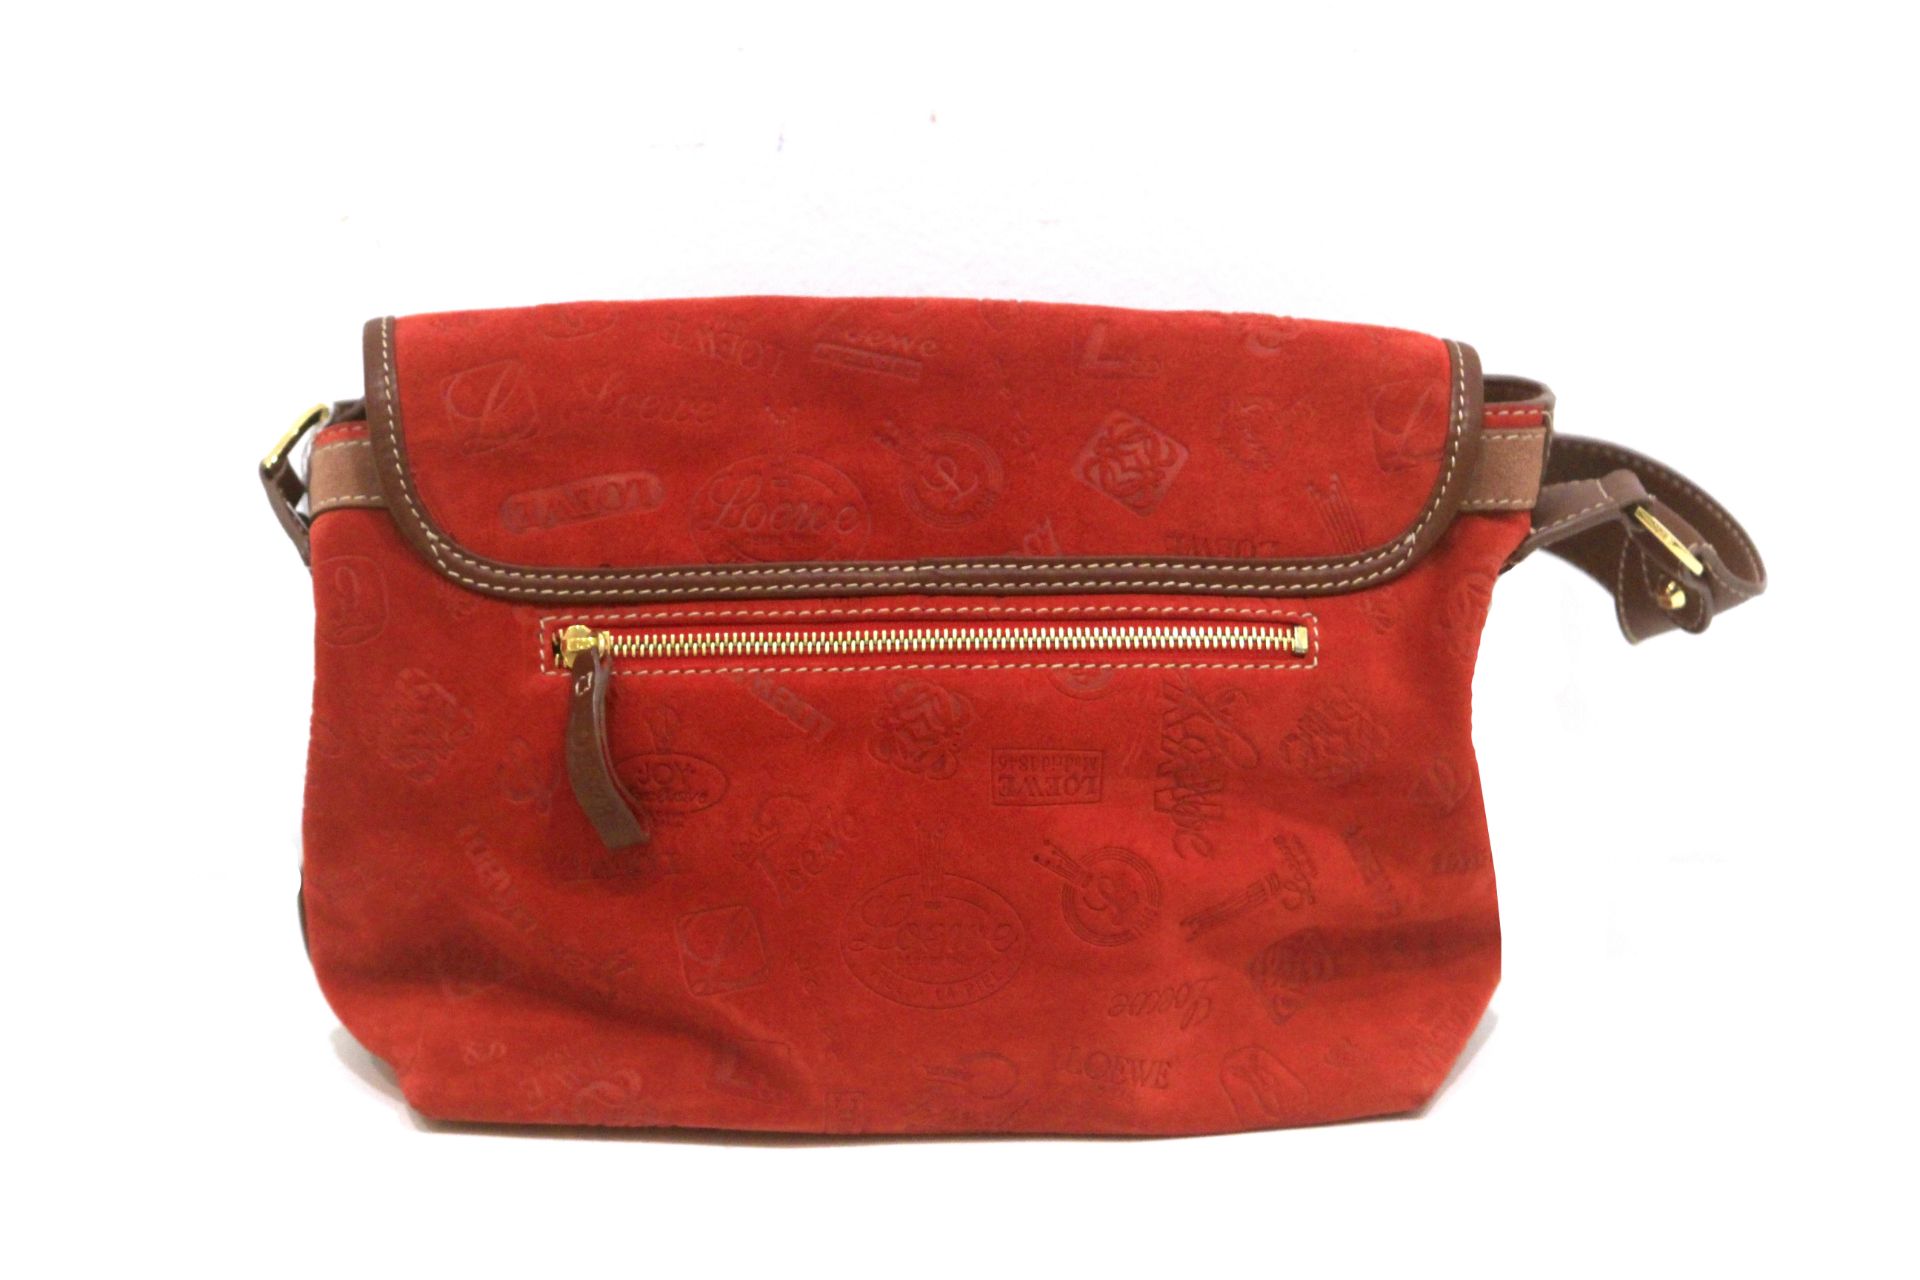 Loewe. 160 anniversary. Handbag from year 2006 - Image 3 of 6